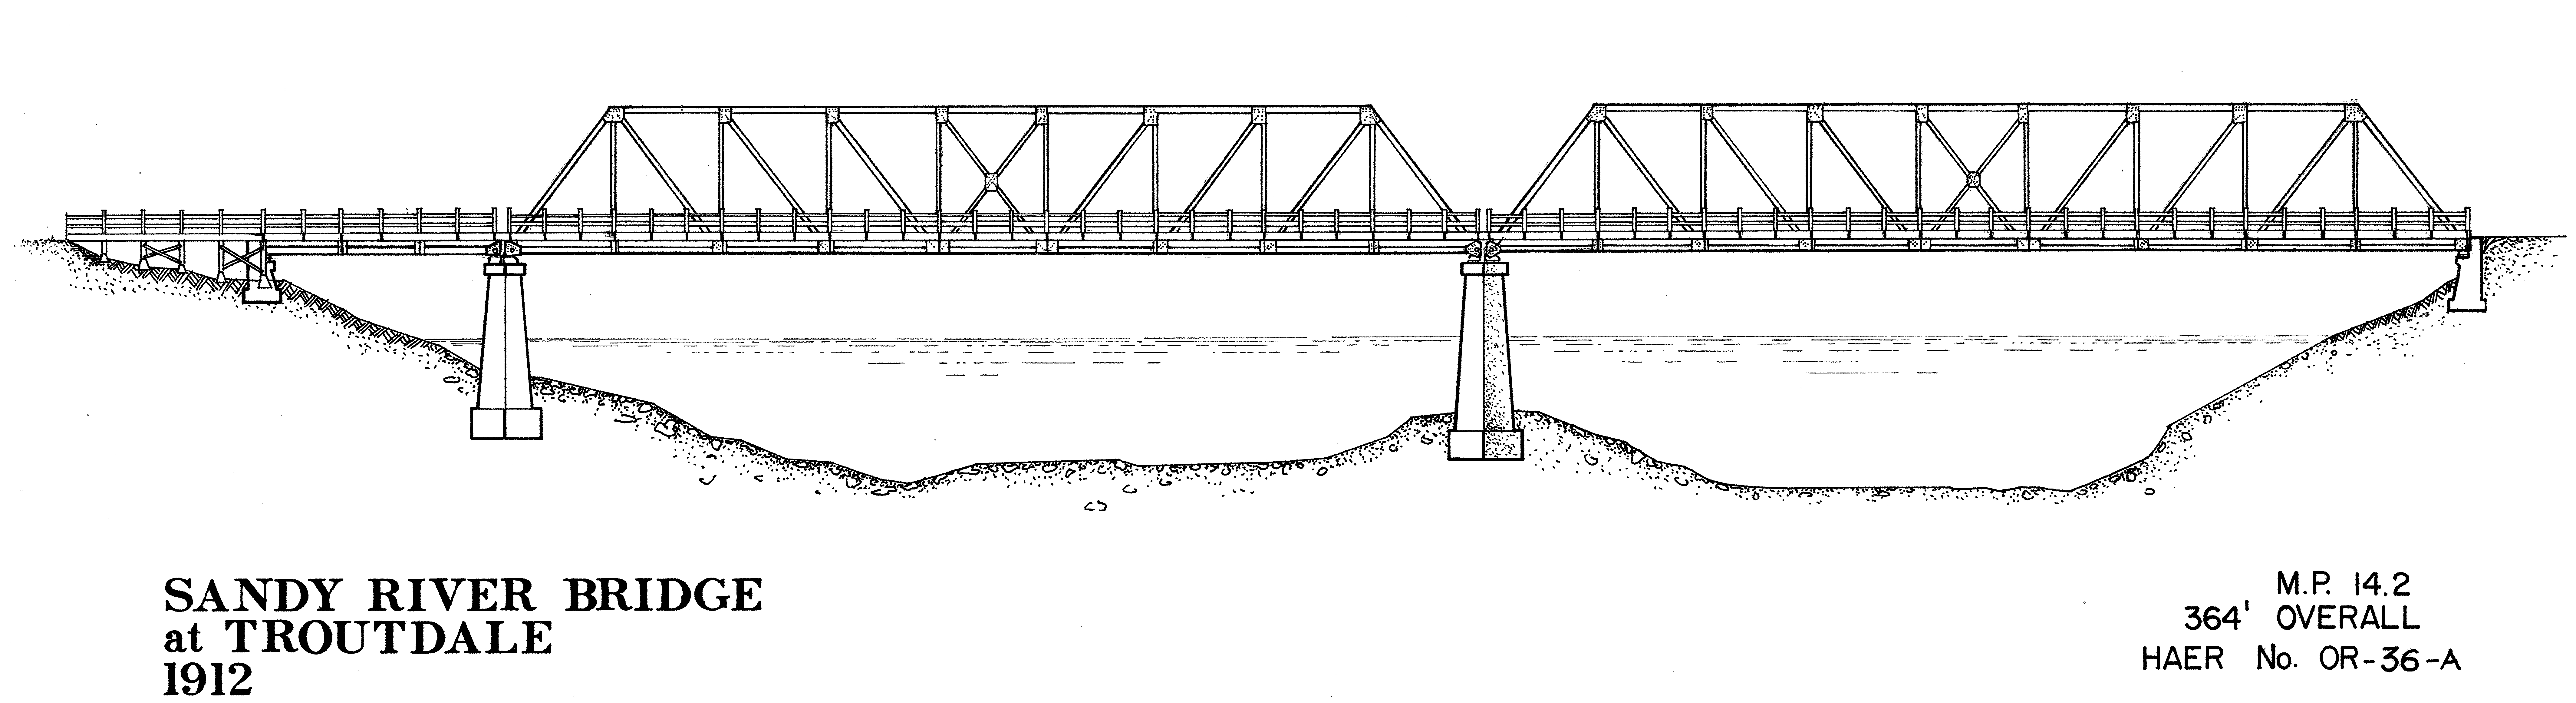 Sea Bridge